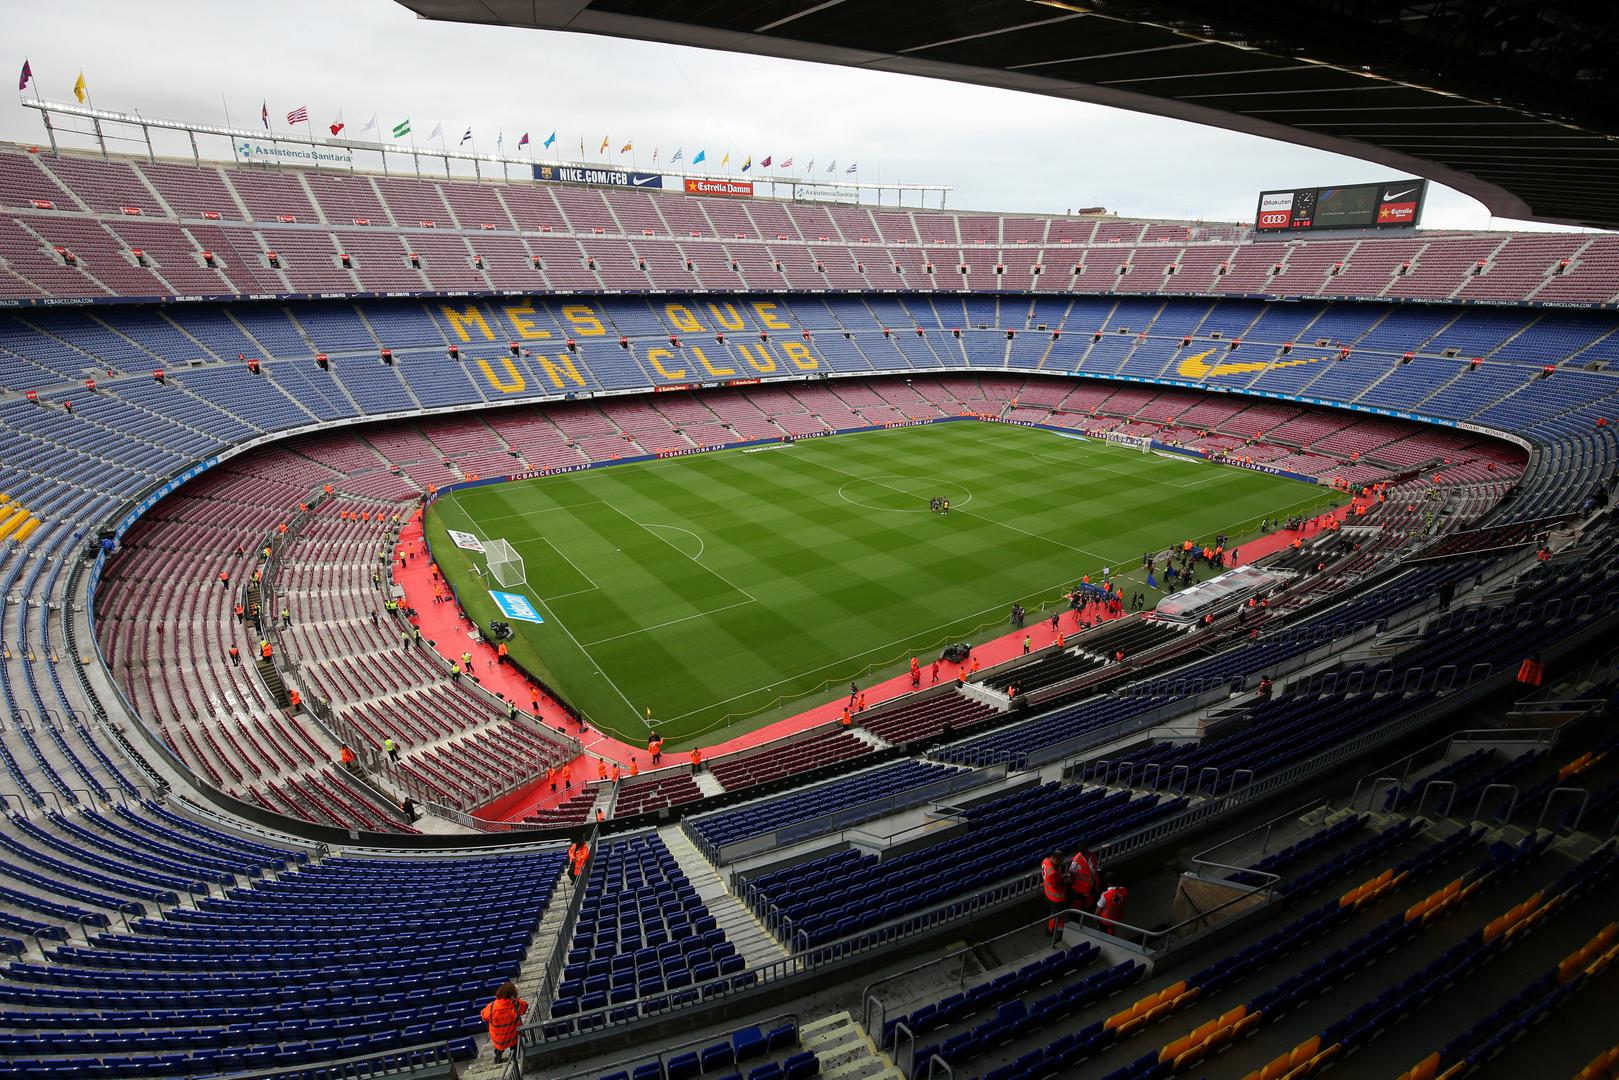 
Camp Nou prima gotovo 100 tisuća ljudi, a danas je sablasno prazan.